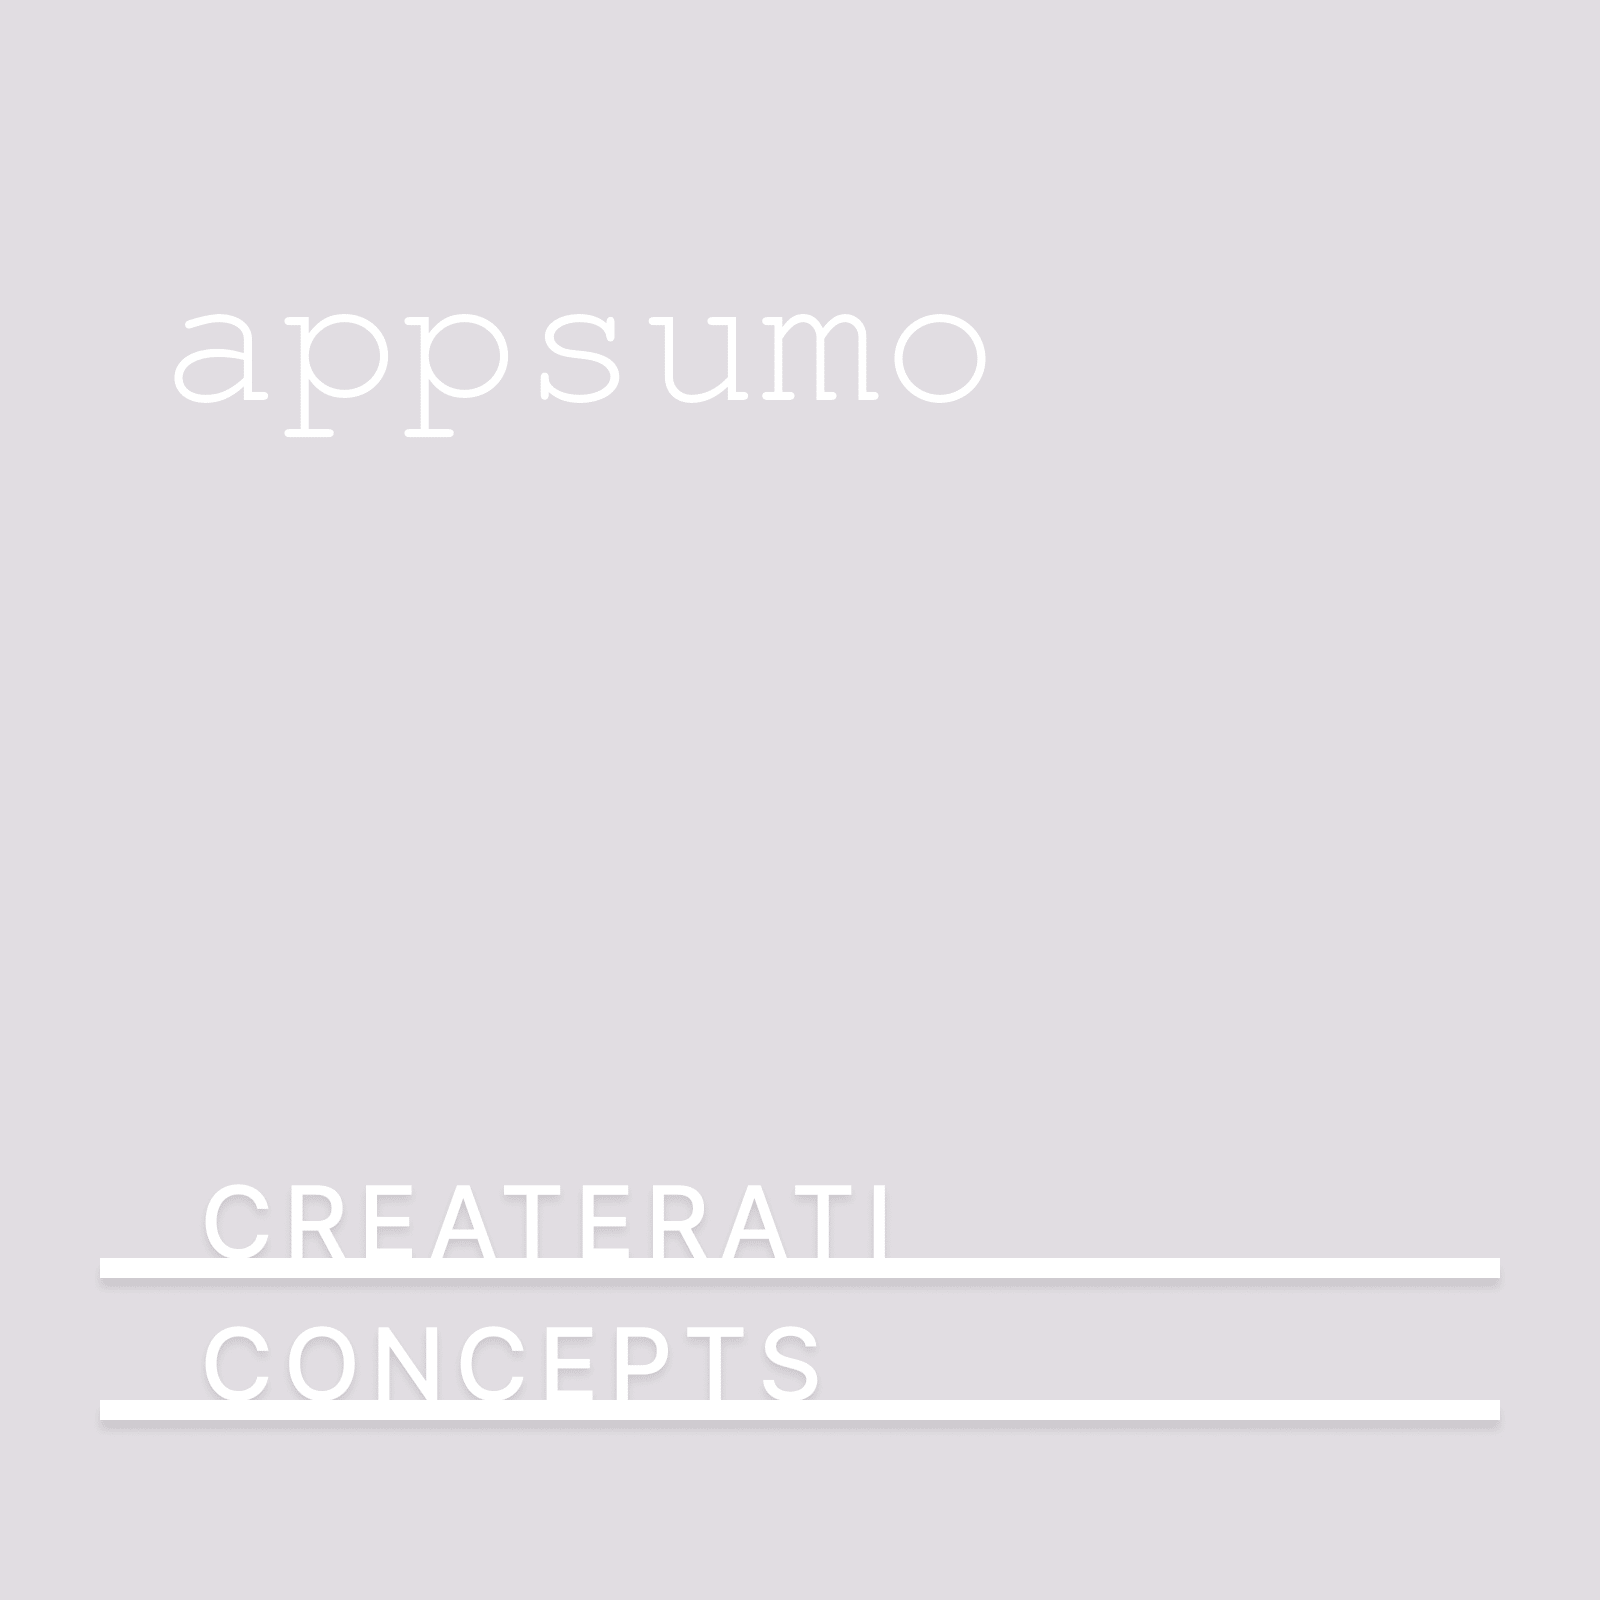 AppSumo: The Store for Entrepreneurs